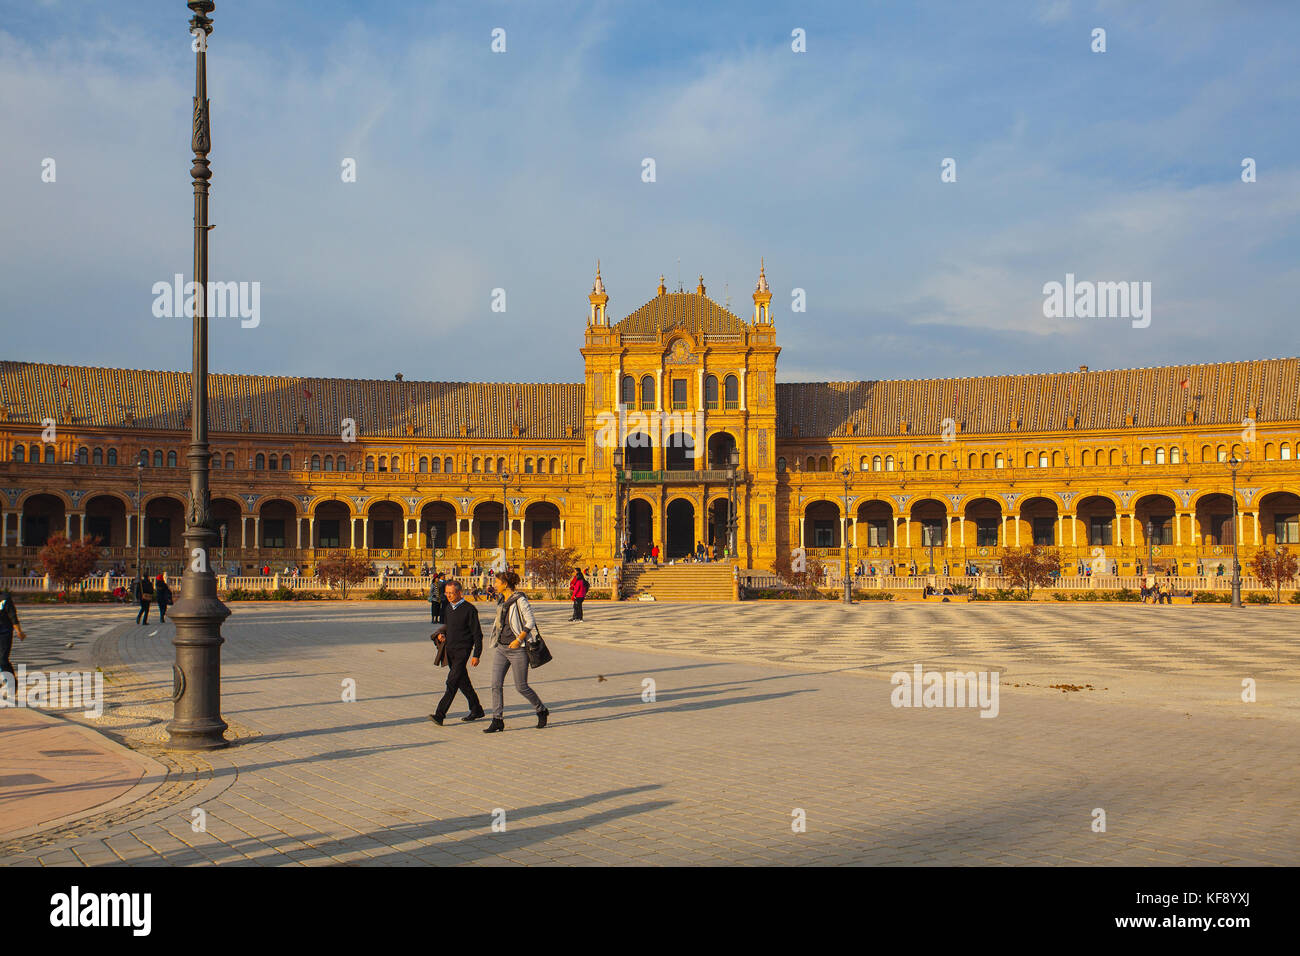 Séville, Espagne - novembre 18,2016 : vue sur la plaza de Espana complexe, construit en 1929, est un immense demi-cercle avec une superficie totale de 50 000 mètres carrés Banque D'Images